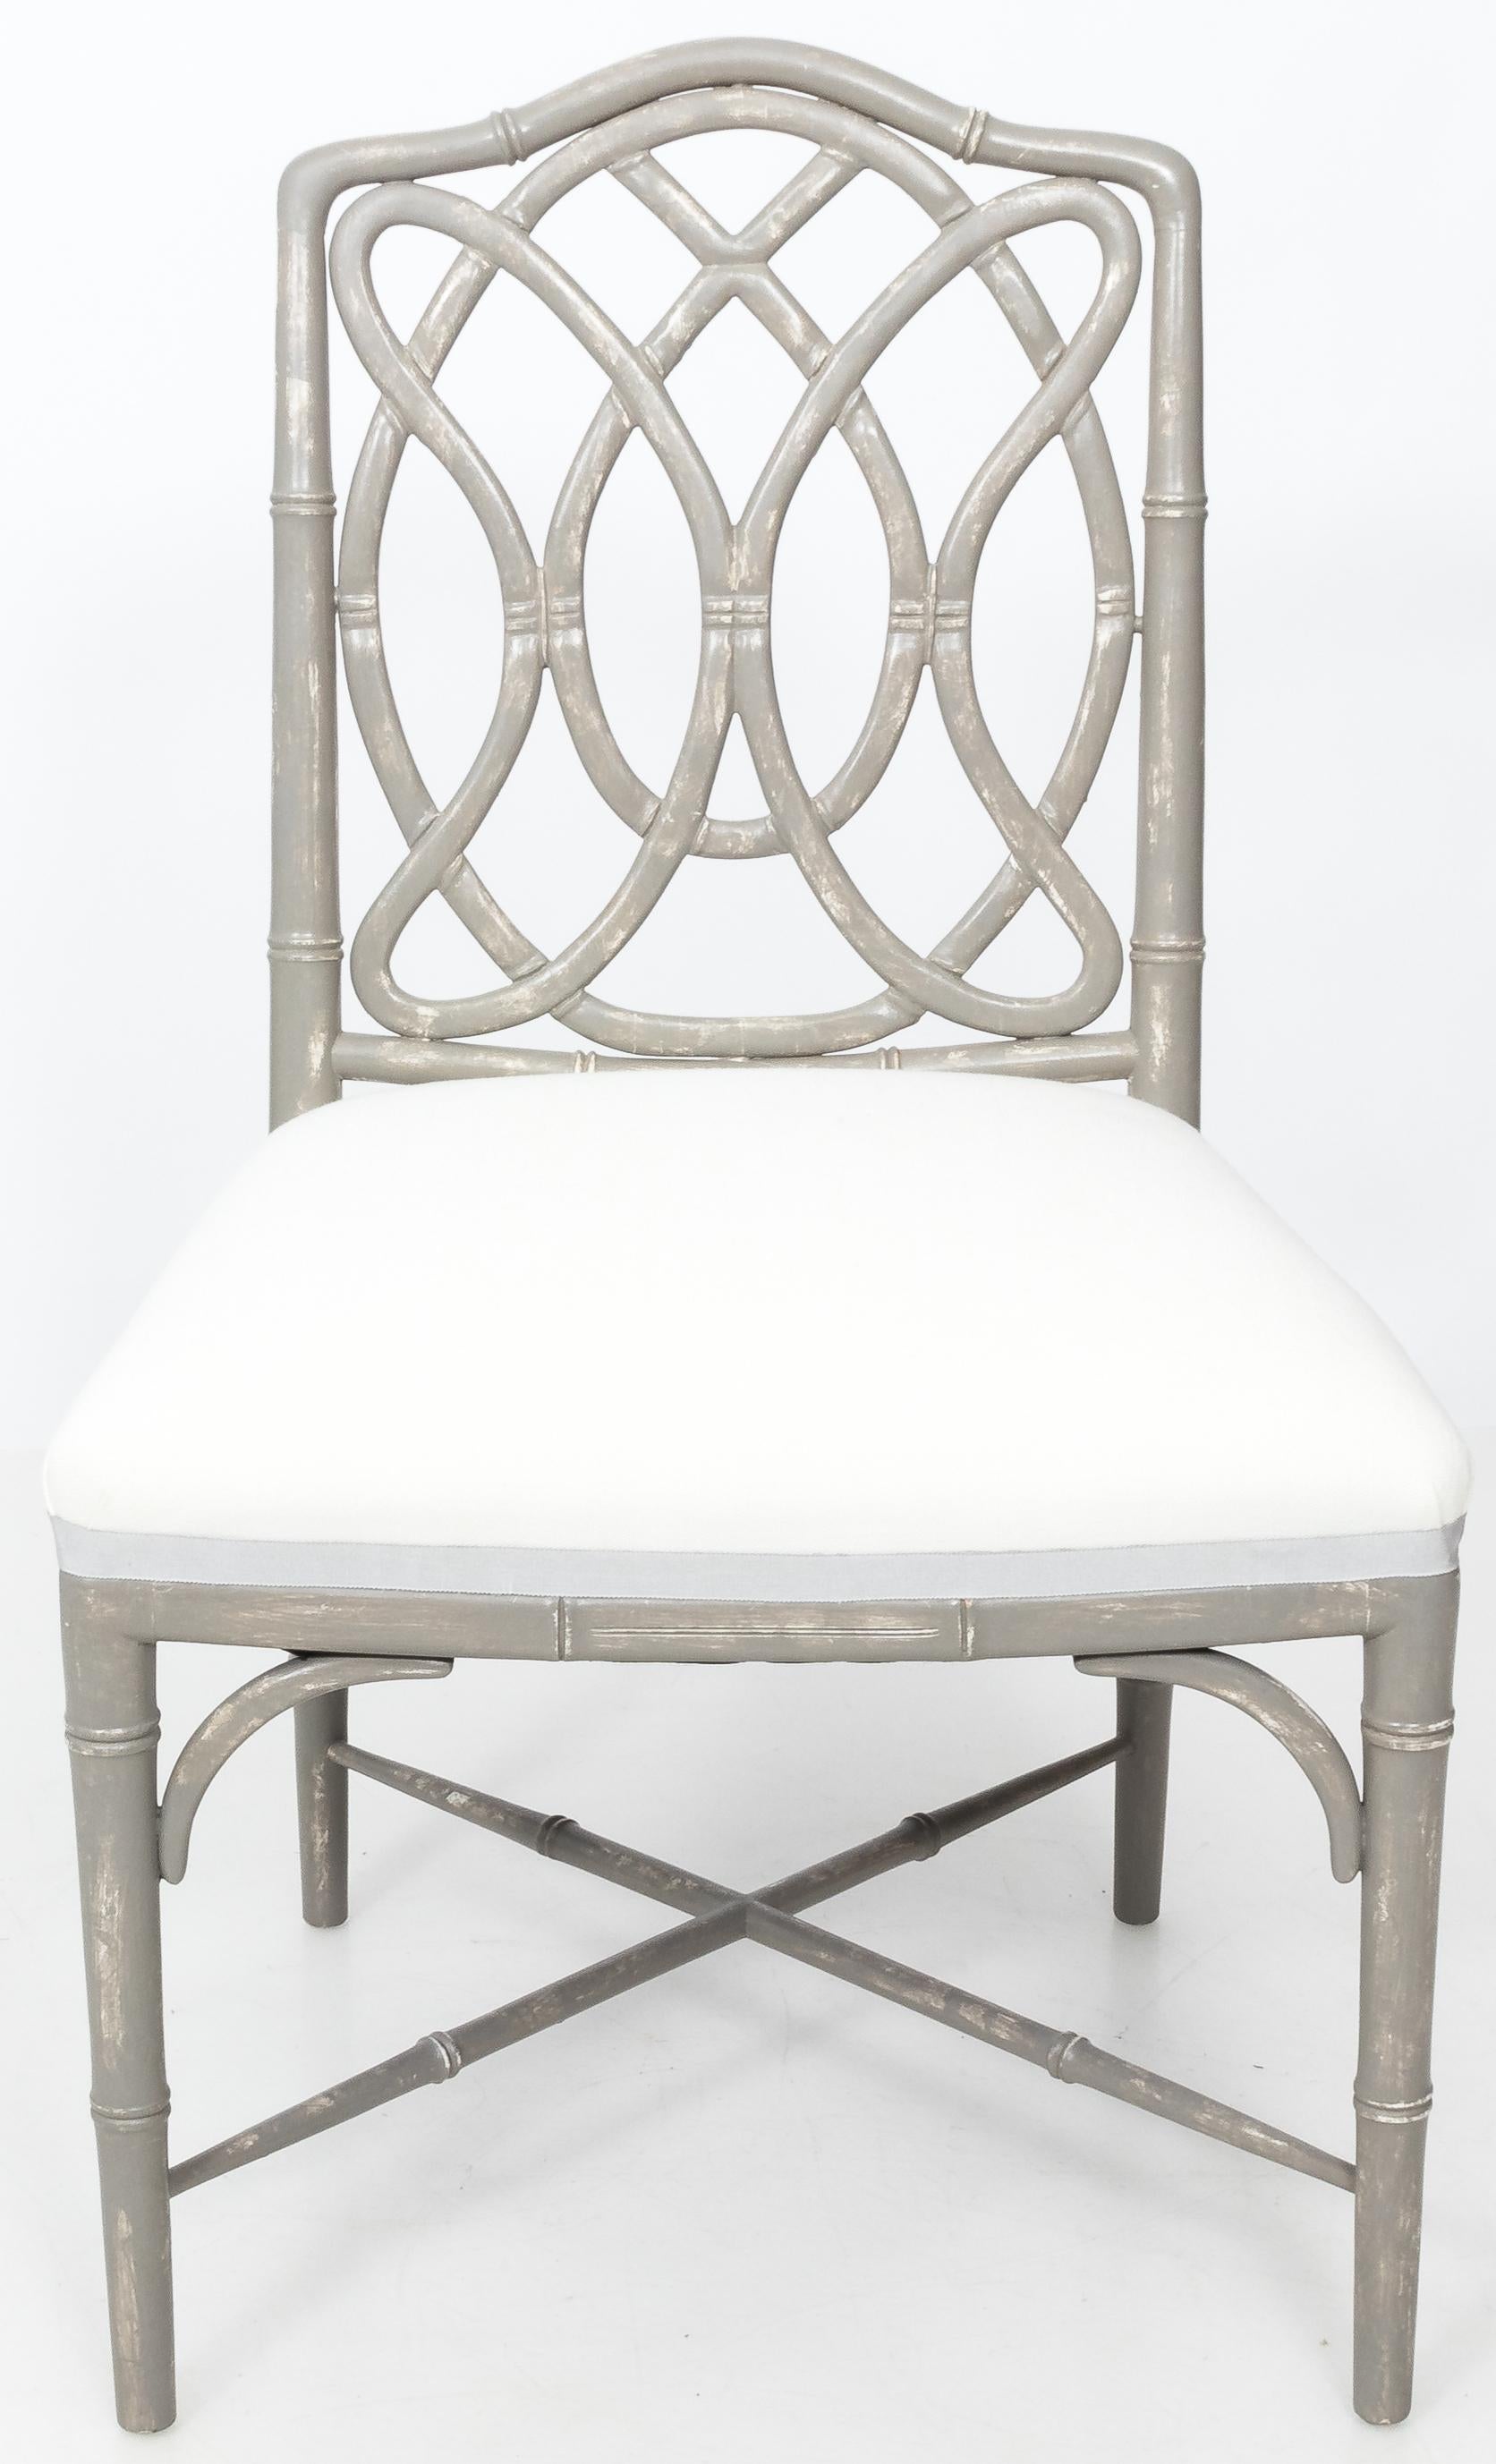 Ein Paar Esszimmerstühle aus Bambusimitat. Design mit Schlaufenrücken. Neu lackiert in antikem grauem Distress-Finish. Neu gepolstert mit weißem Leinen und grauem Bandbesatz.
Preis pro Paar. 4 Stühle verfügbar.